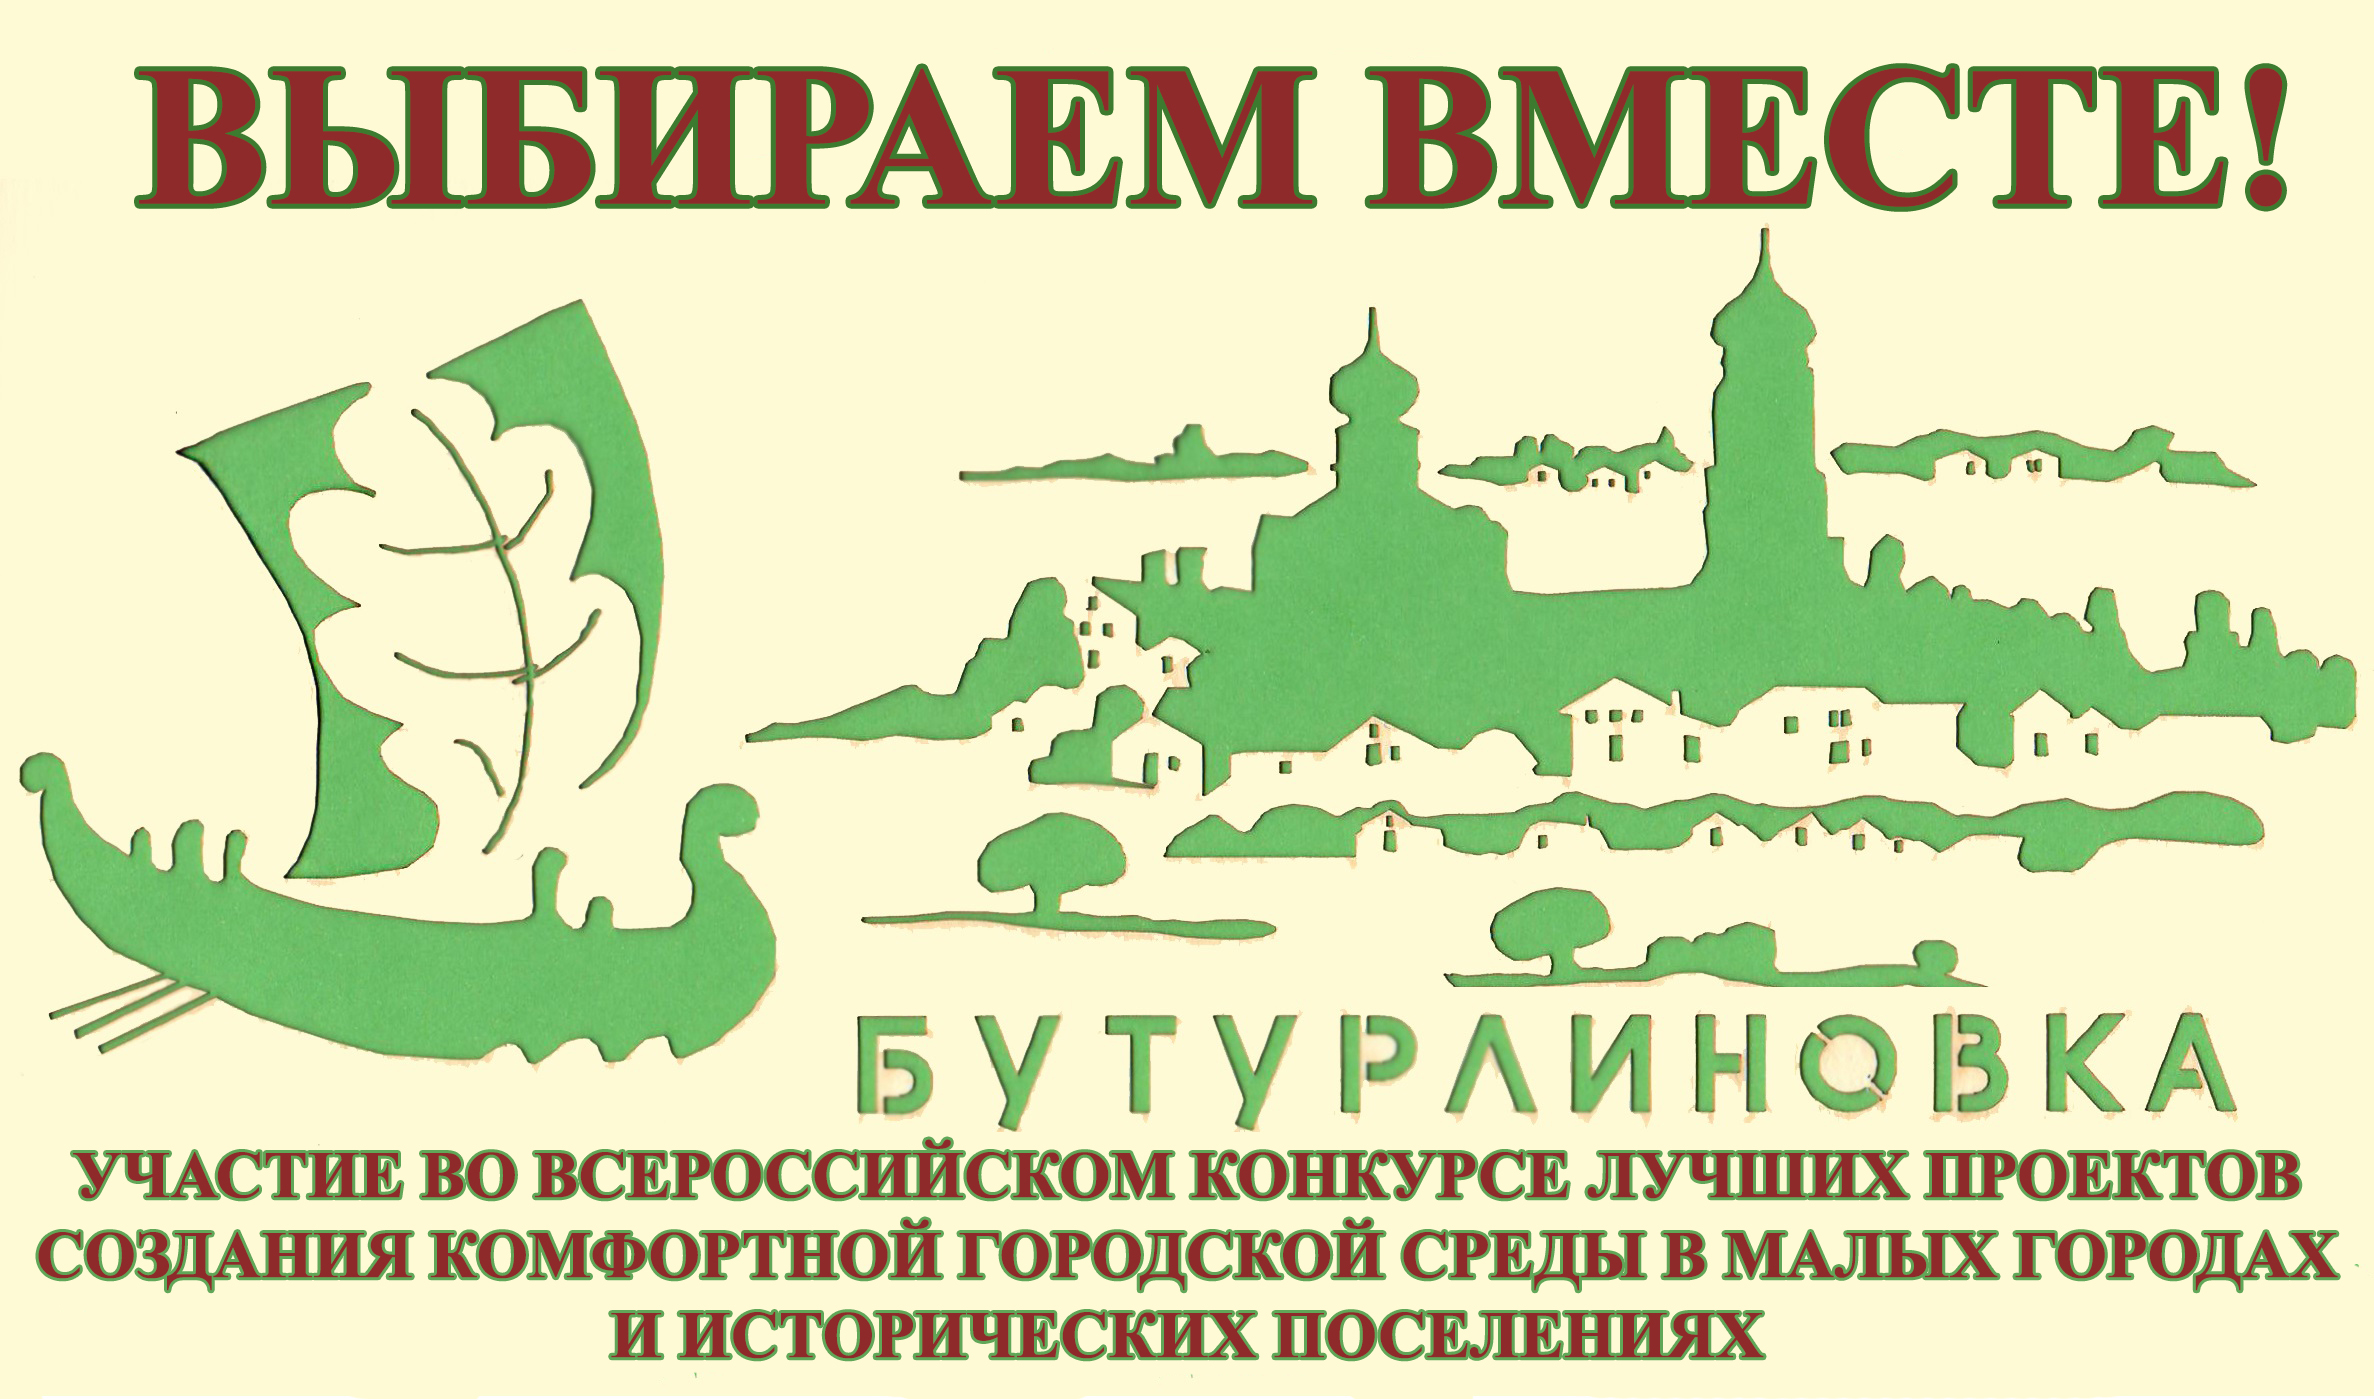 Участие во Всероссийском конкурсе лучших проектов создания комфортной городской среды в 2021 году.